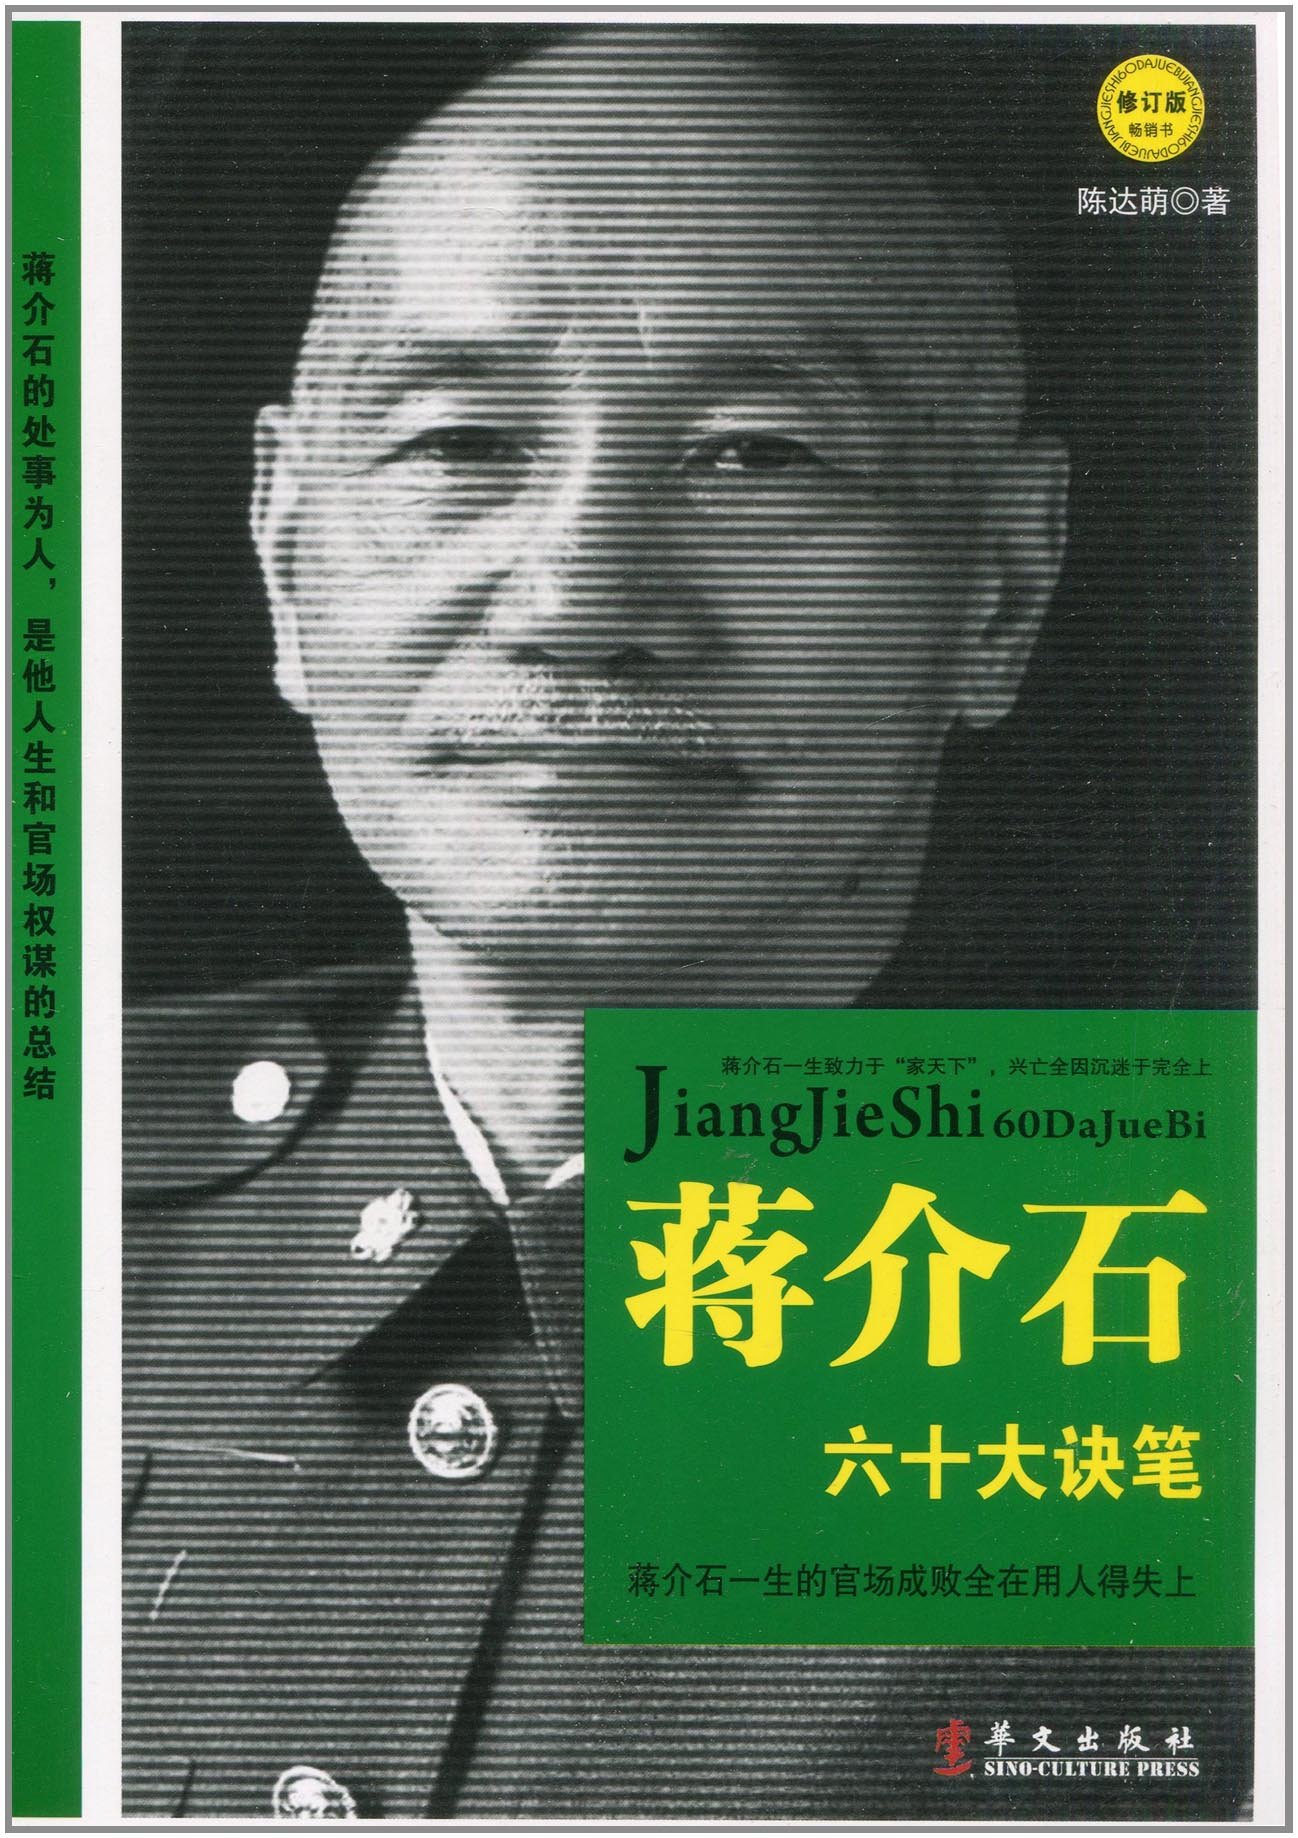 蒋介石六十大诀笔:蒋介石求官、弄权、治家现形记